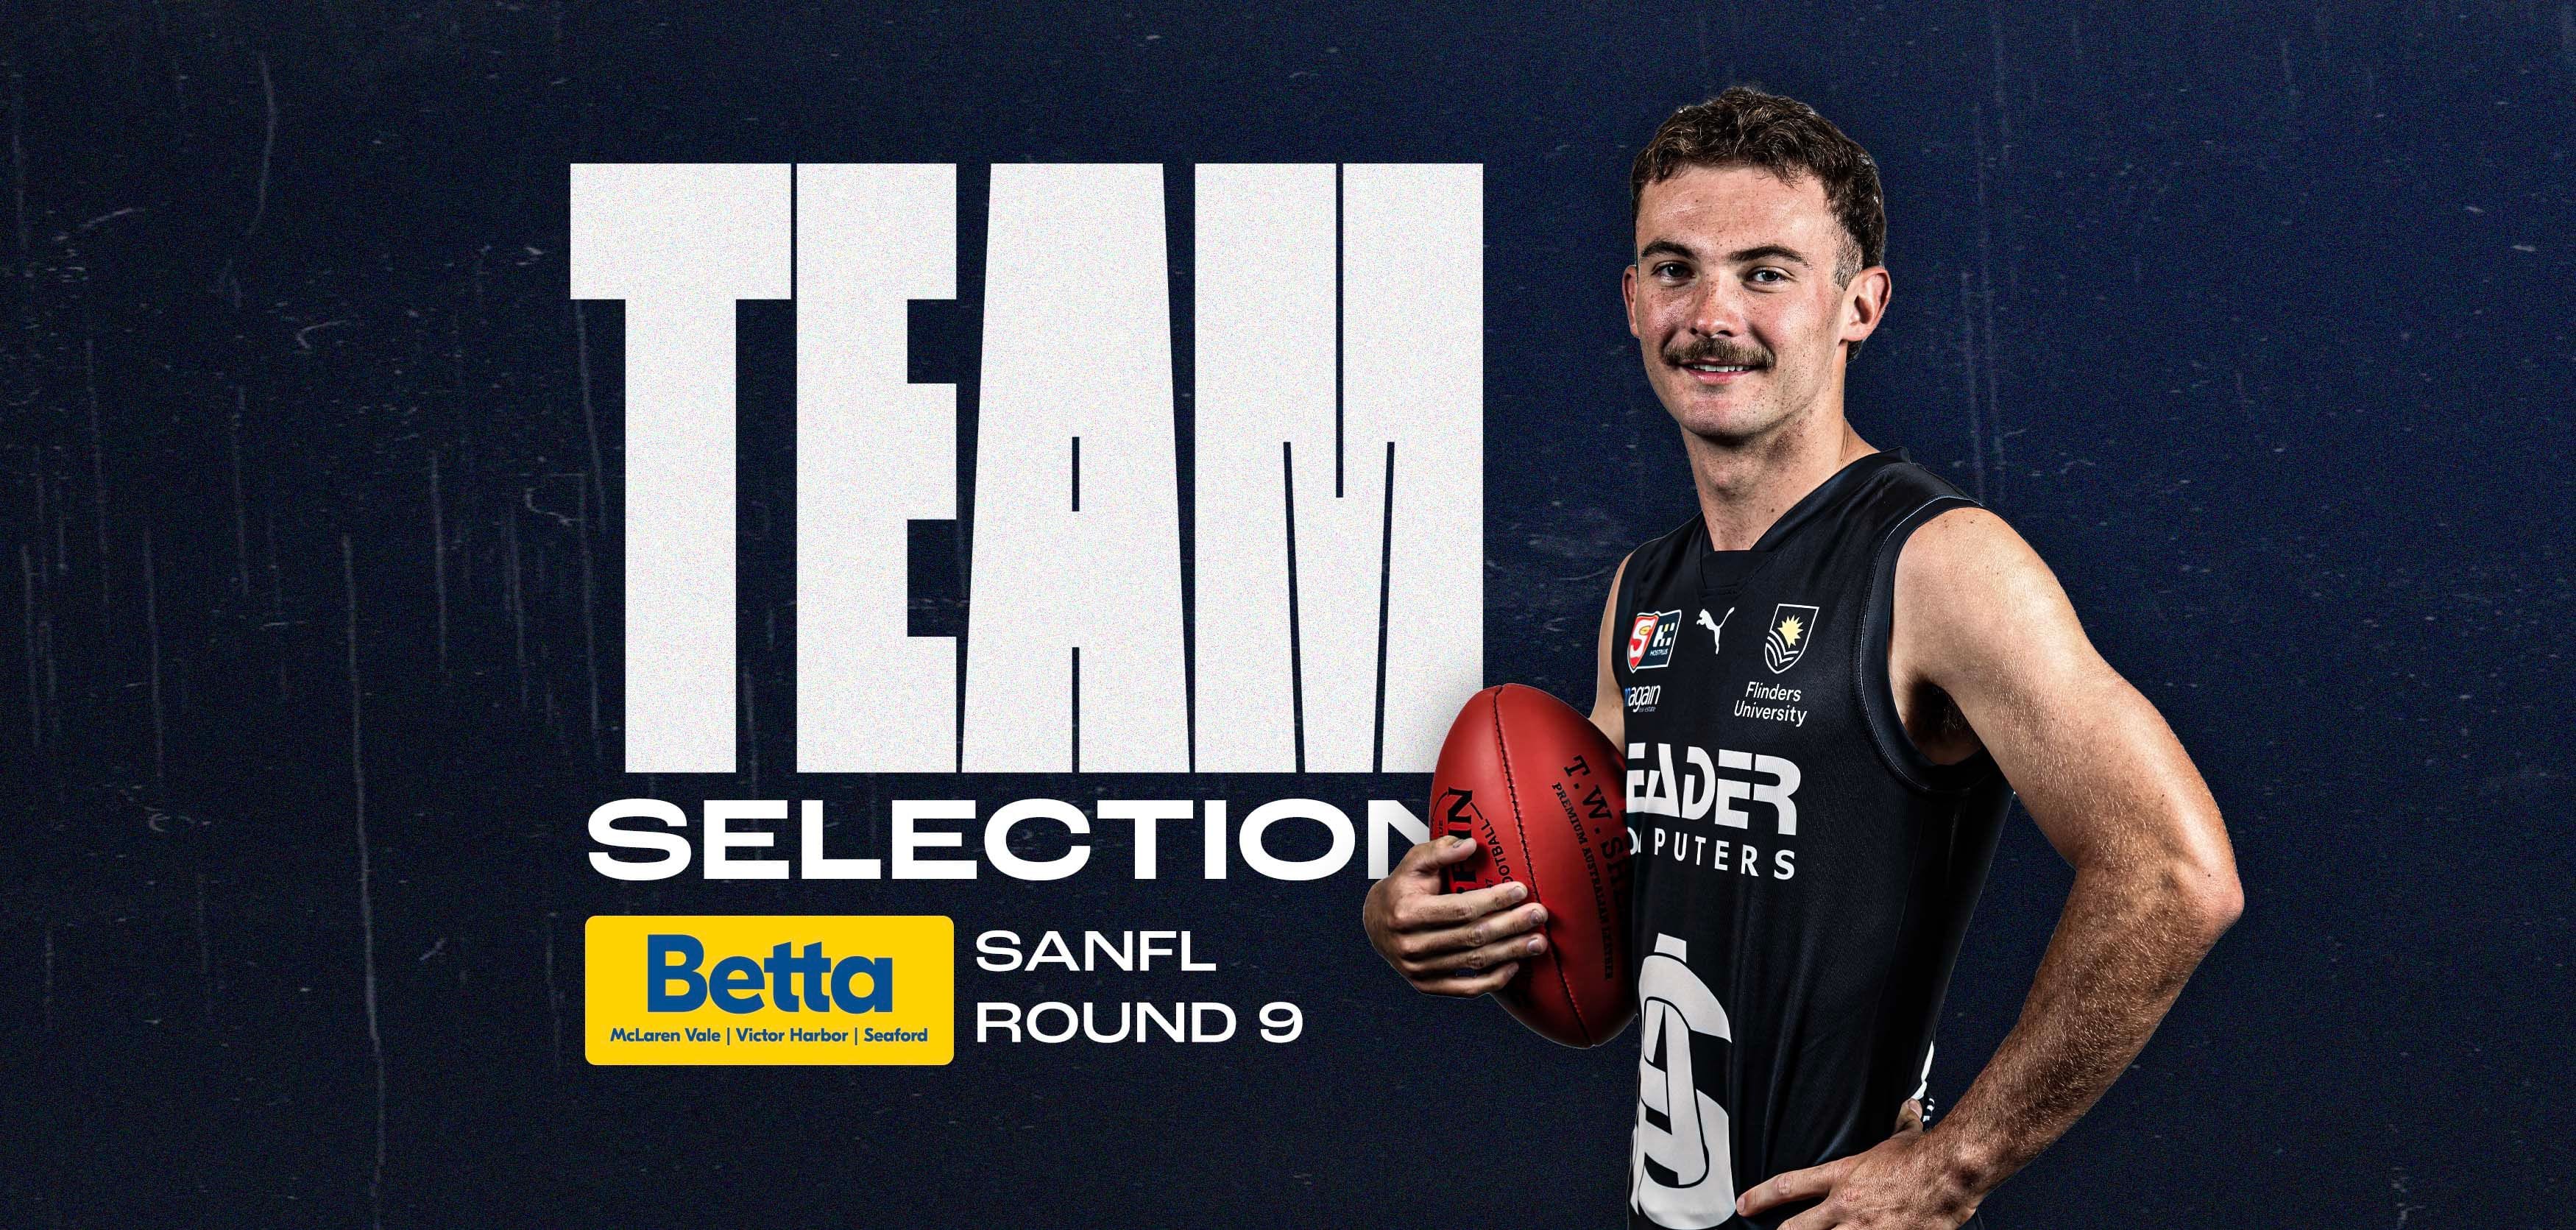 BETTA Team Selection: SANFL Round 9 v Adelaide